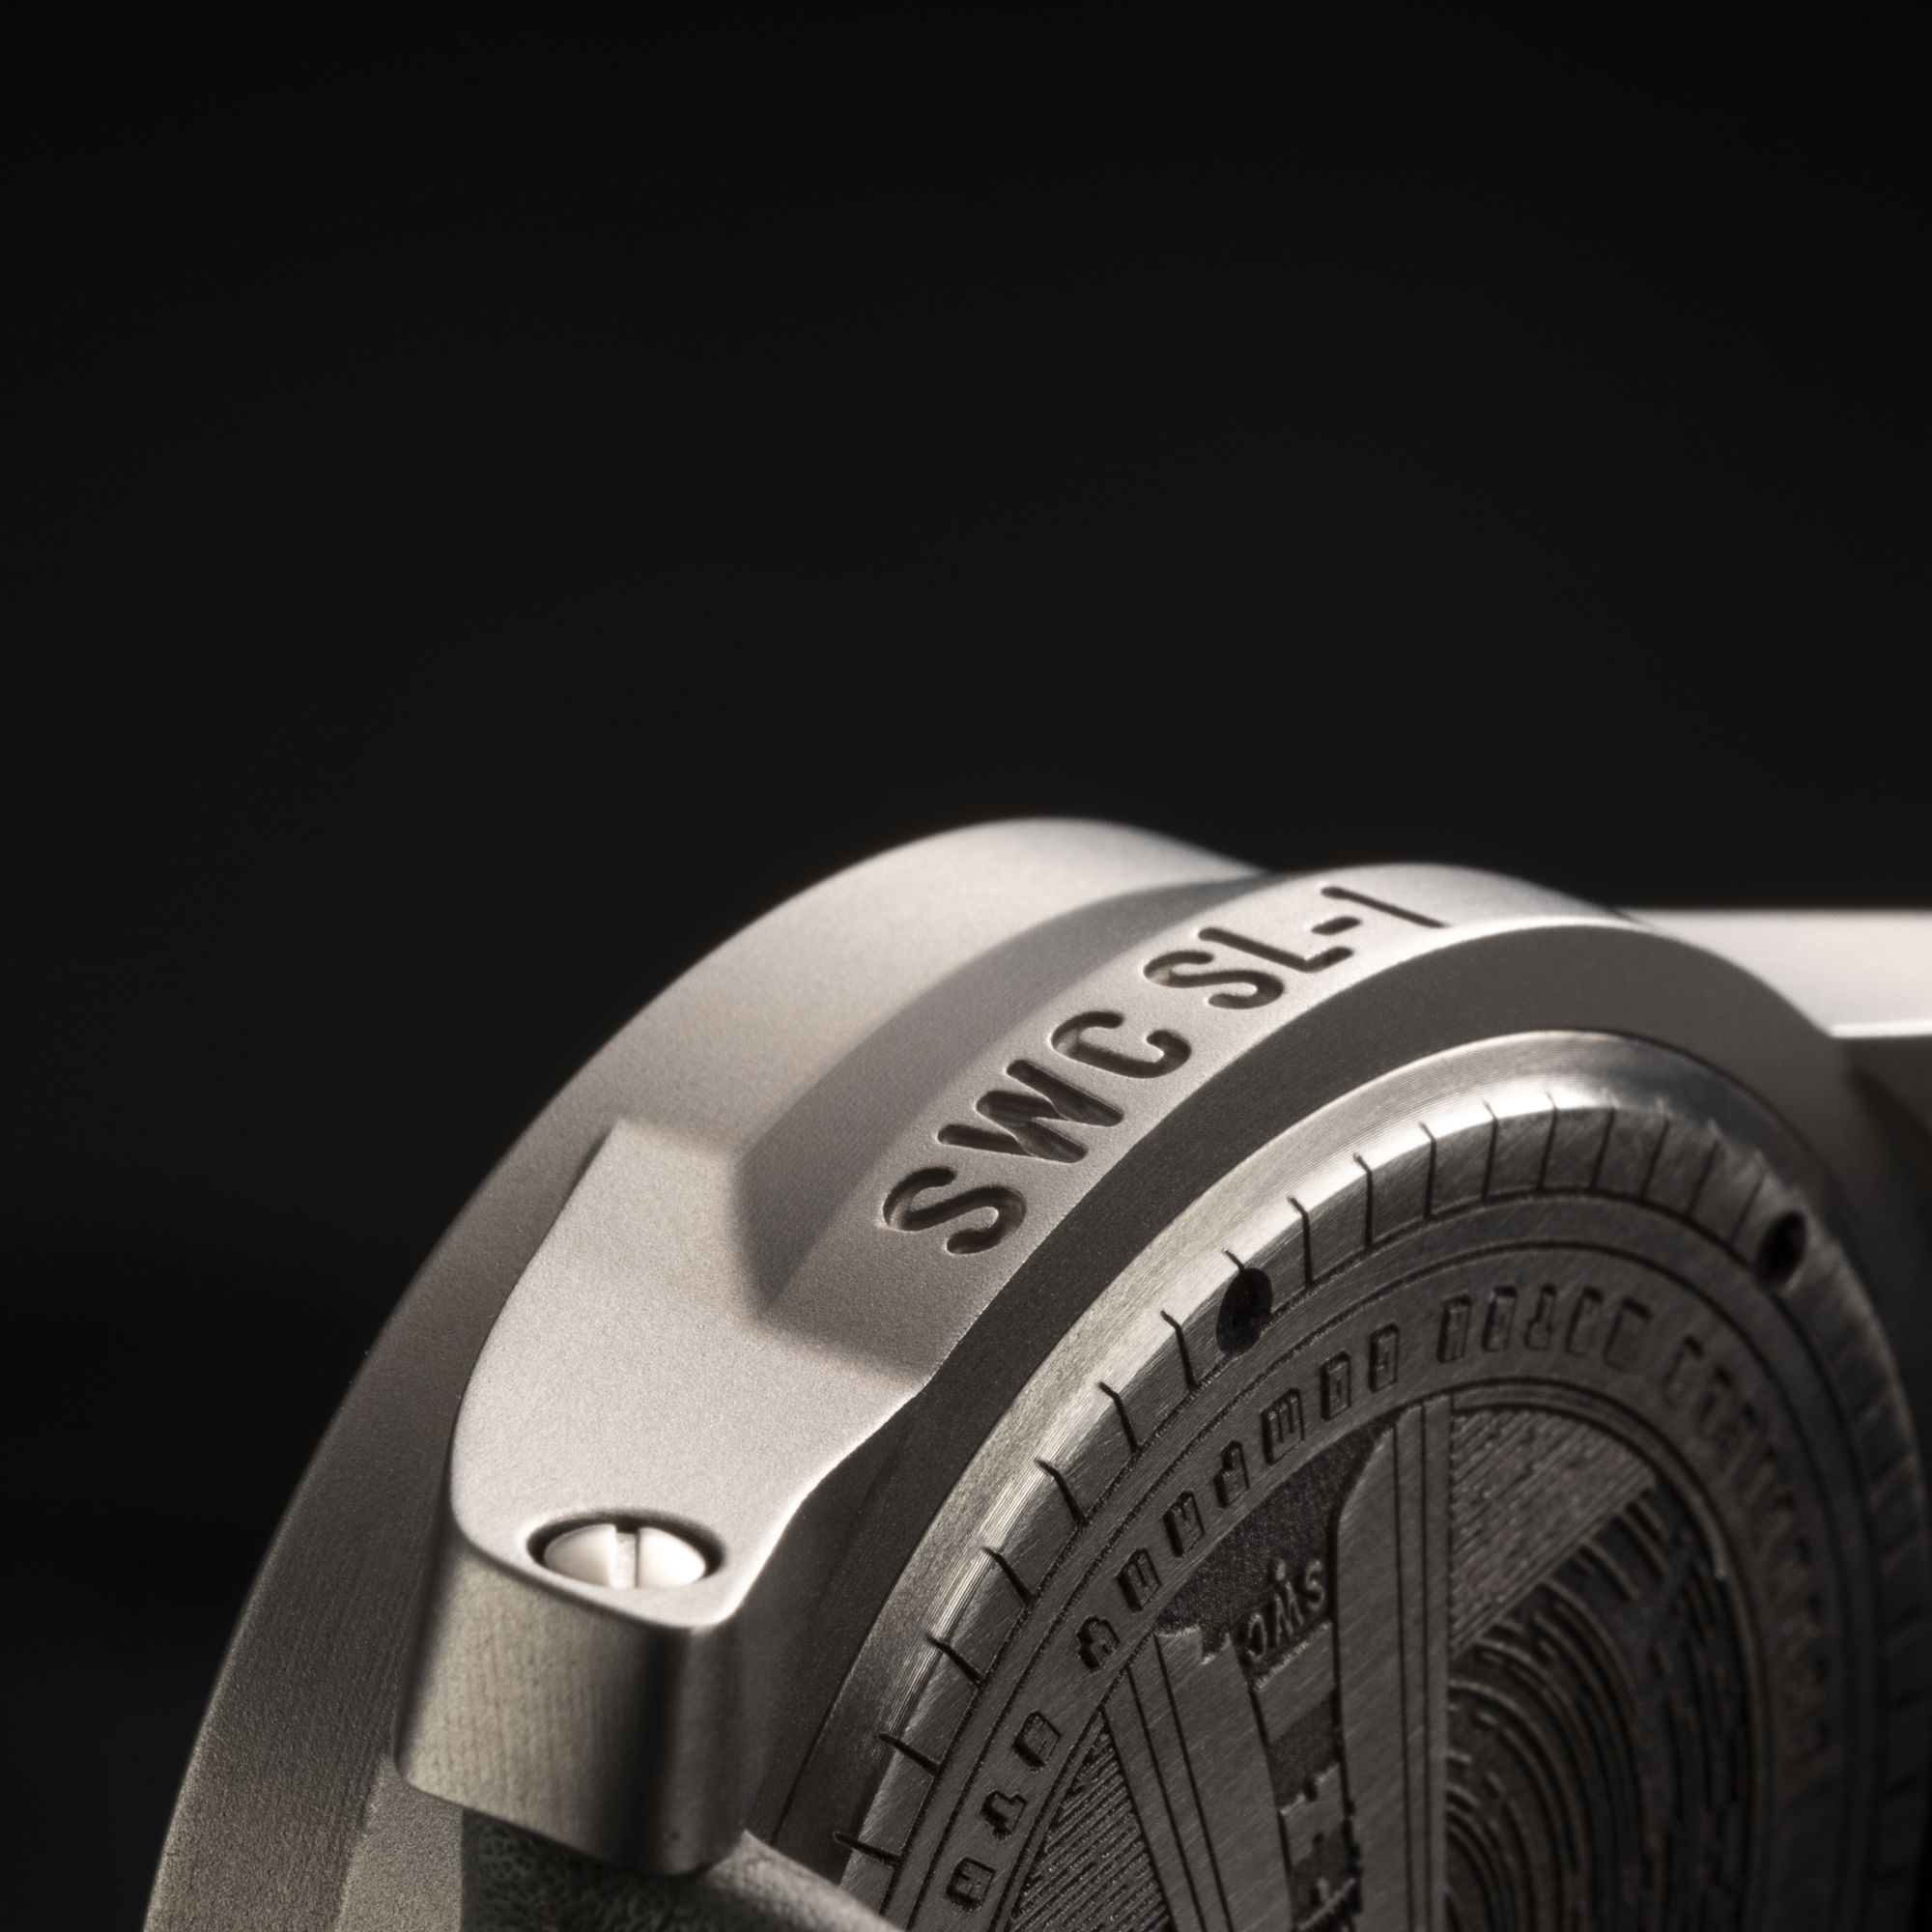 Titanium watch case engraving